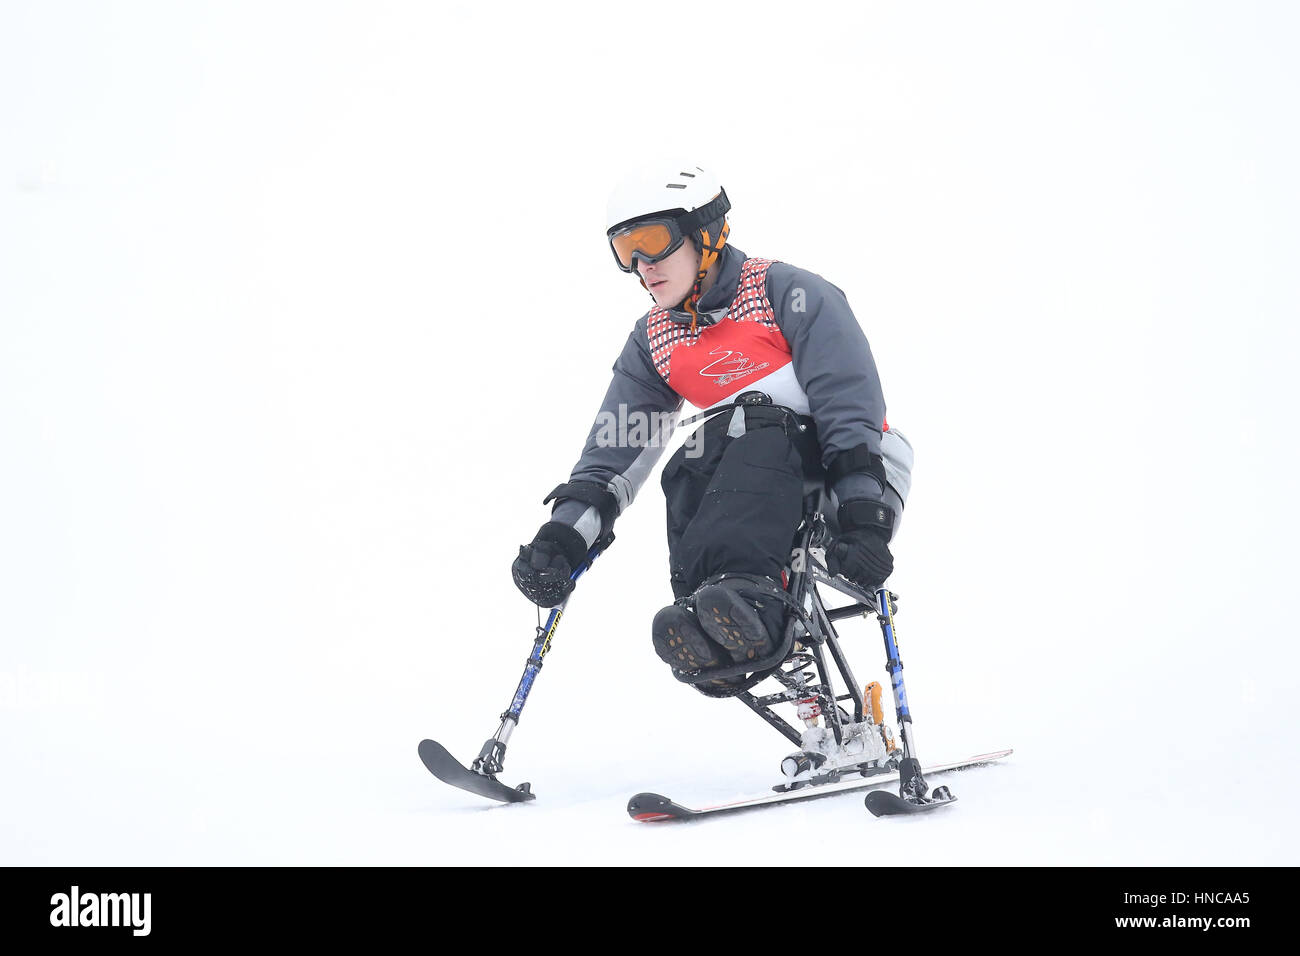 Ontario, Kanada. 11. Februar 2017. Die Ontario Parasport Spiele Alpin-Ski-Event fand am Samstag, 11. Februar 2017 Bolar Berg statt.  Athleten mit körperlicher Behinderung bewarben sich im stehen und sitzen-Skiern, auch die sehbehinderte Athleten auf Skiern hinunter mit einem Reiseführer-Skifahrer. Alle 9 Teilnehmer ging bergab 2 mal einige Athleten, die Geschwindigkeiten von 100 km/h erreichen. Die Ontario Parasport Spiele bietet die Möglichkeit, diesen Sport zu präsentieren und inspirieren Sie andere, sich zu engagieren. Bildnachweis: Luke Durda/Alamy Live-Nachrichten Stockfoto